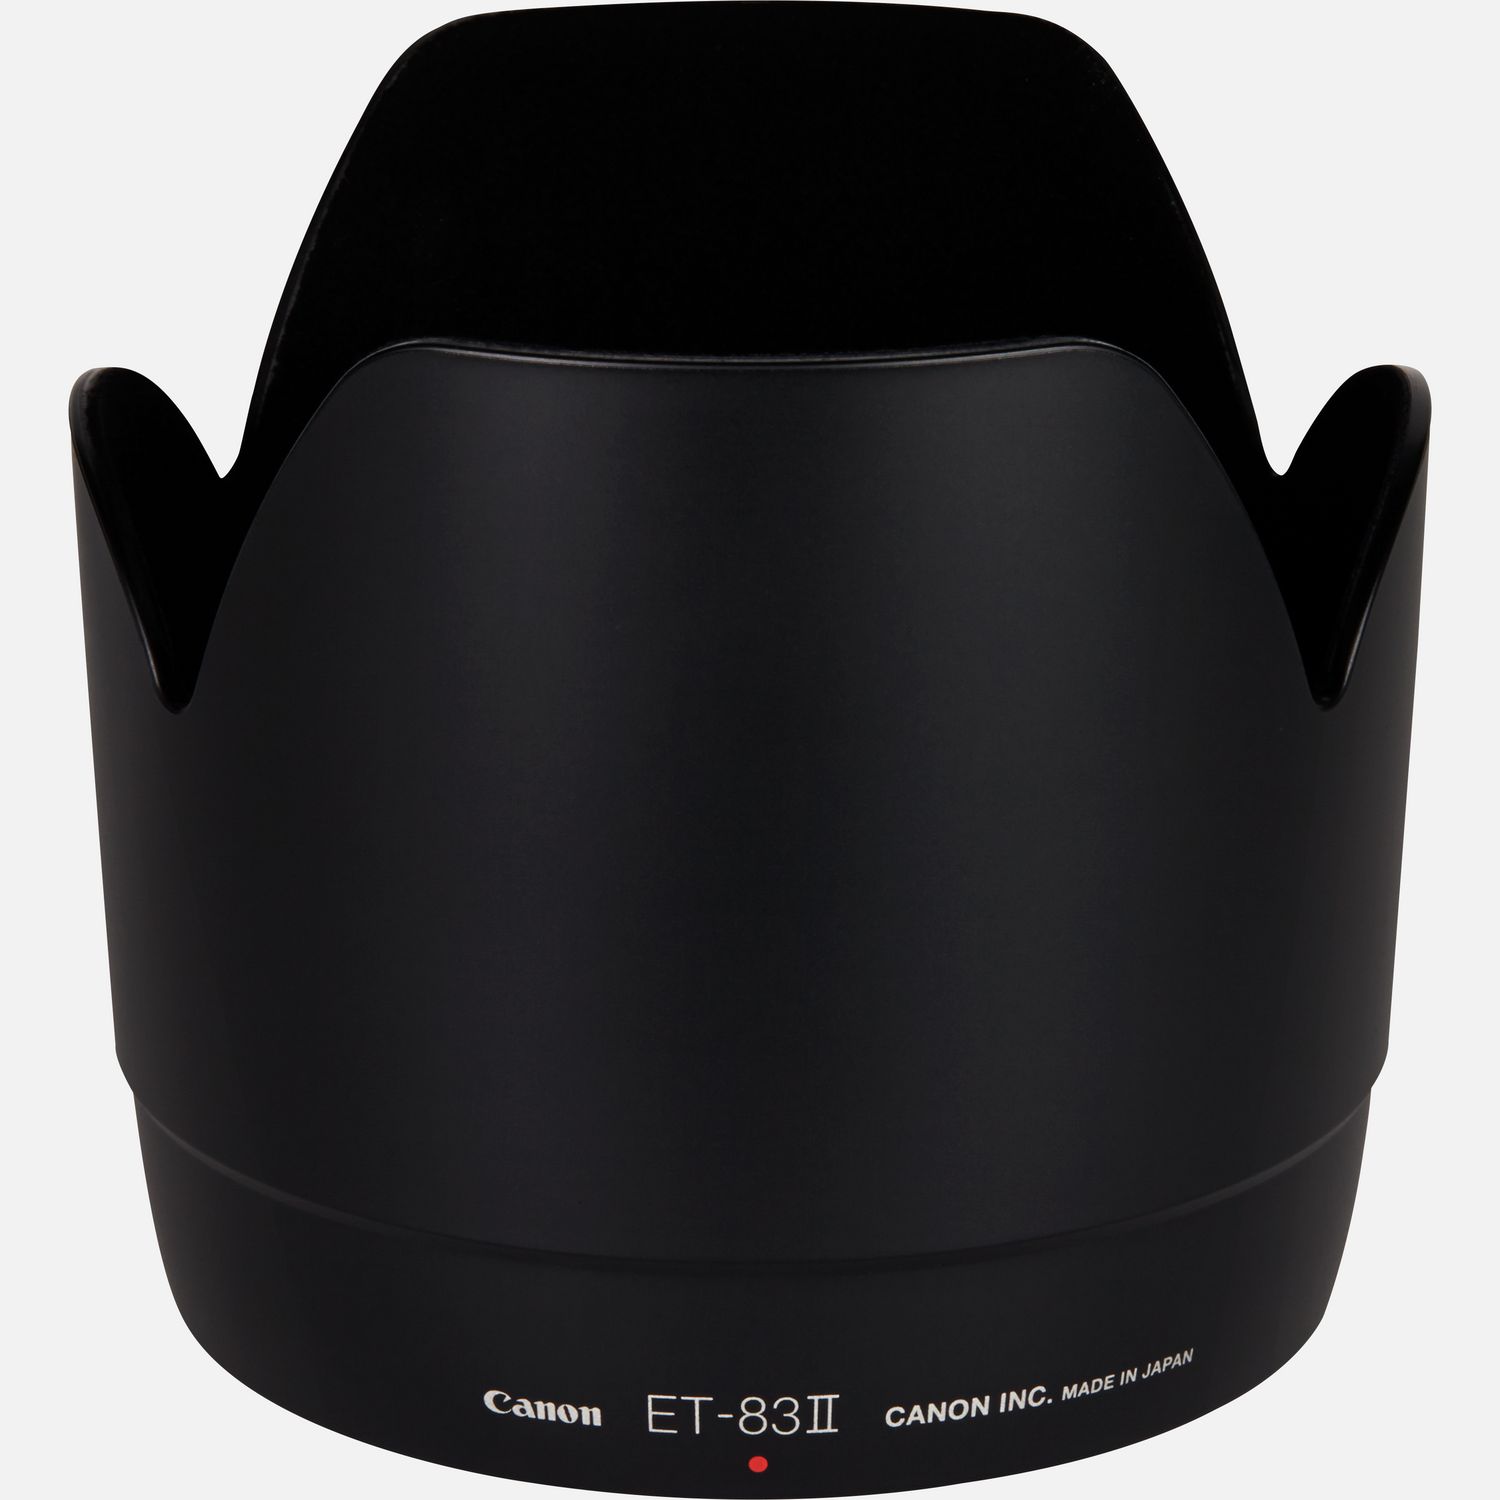 Passt auf das Objektiv EF 70-200mm 1:2,8L USM, reduziert Reflexionen, die durch direkt auf die Frontlinse auffallendes Licht hervorgerufen werden.      Kompatibilitt       EF 70200mm f/2.8L USM